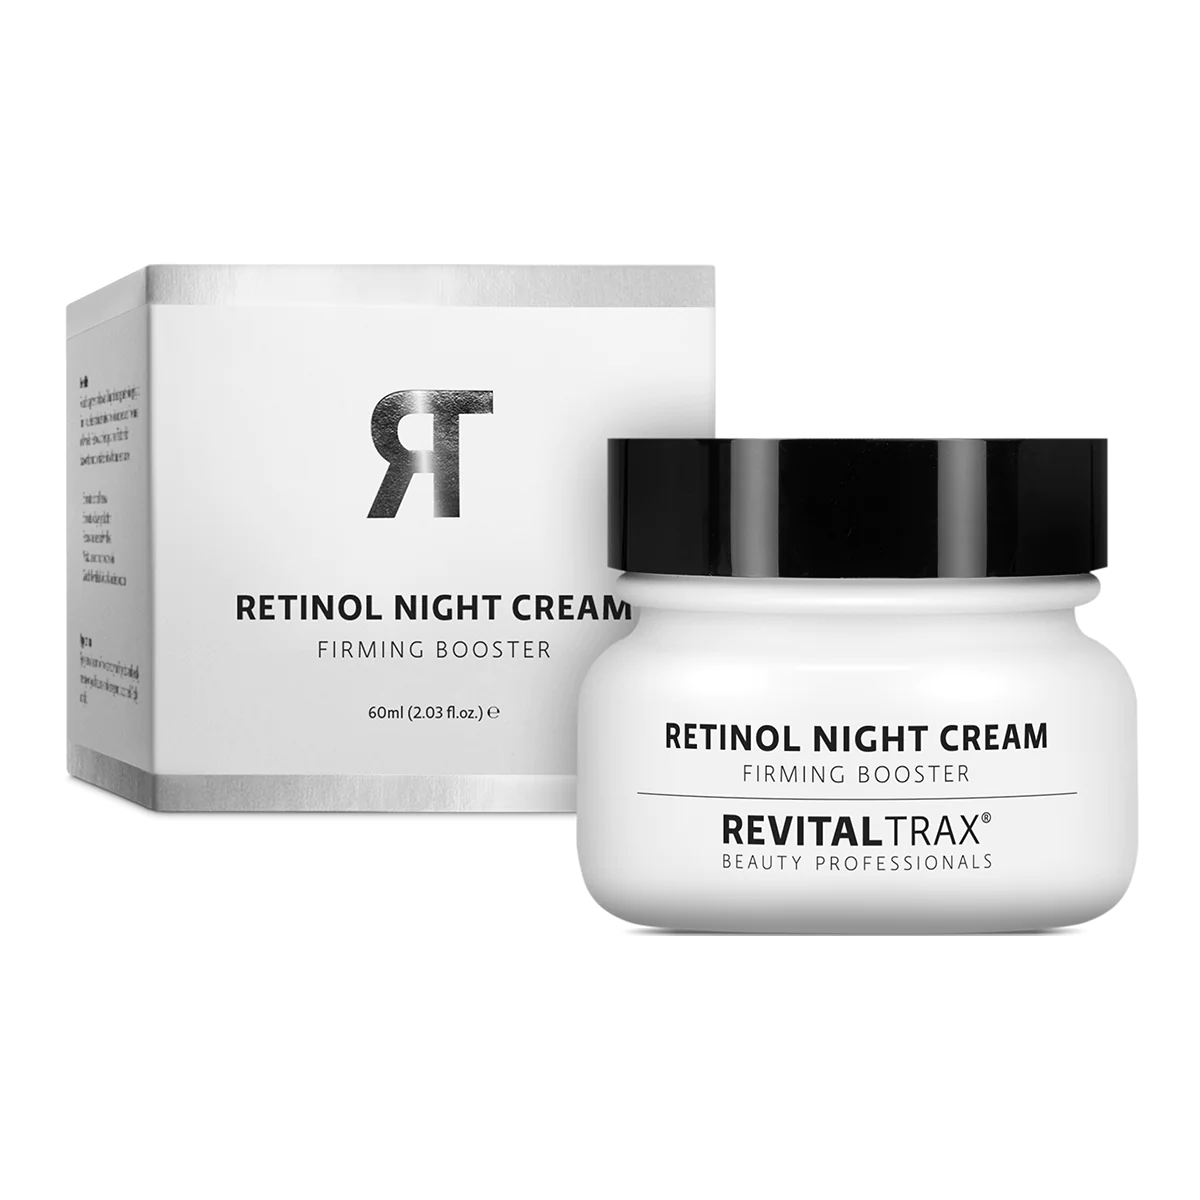 retinol-night-cream_5d6047b9-b595-44ac-9f67-59a6f9c7545b_1024x1024@2x.jpg